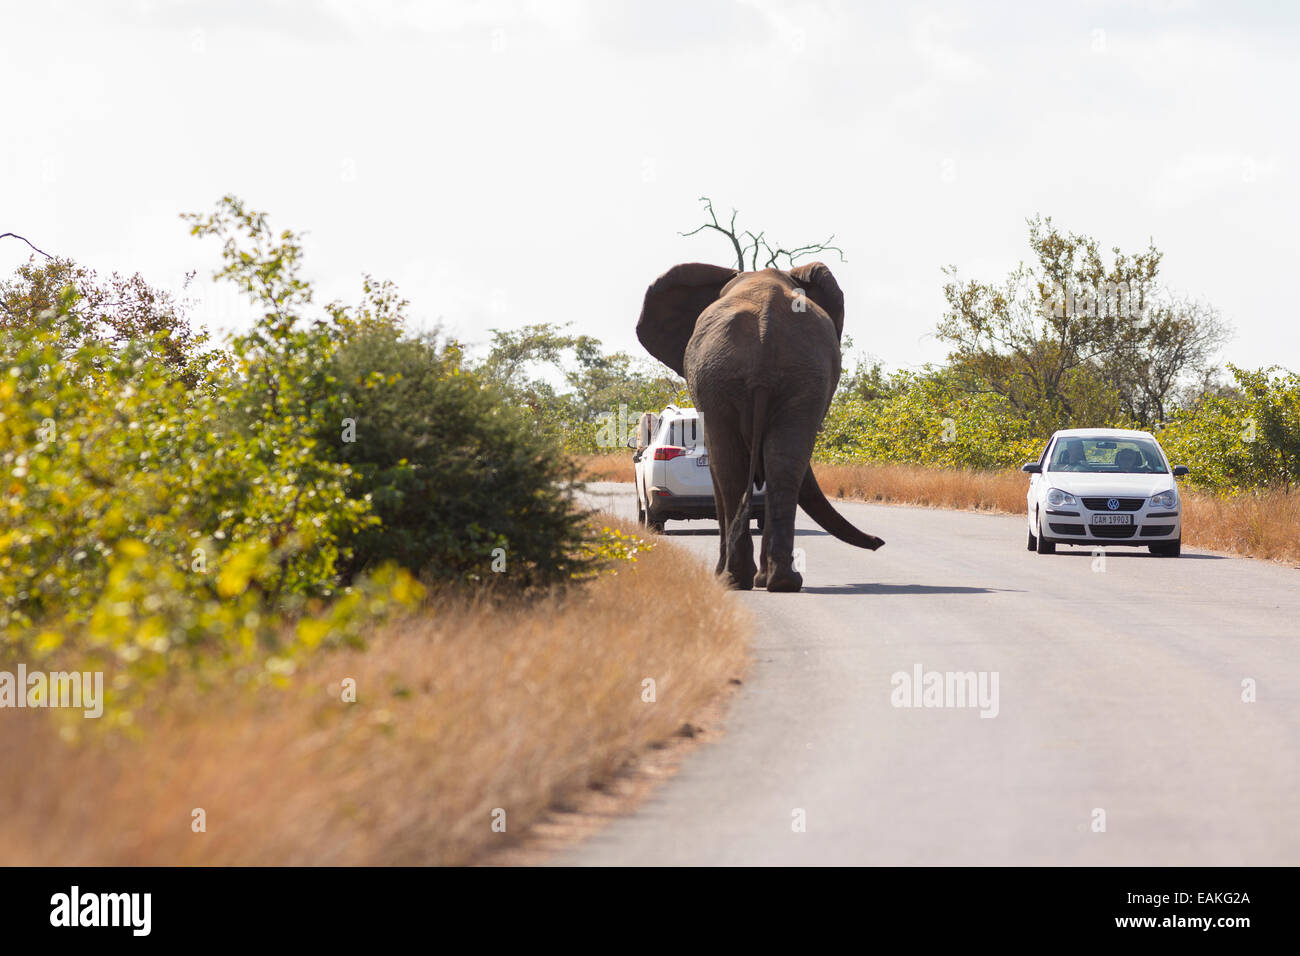 Le parc national Kruger, AFRIQUE DU SUD - Éléphant sur route avec deux voitures. Banque D'Images